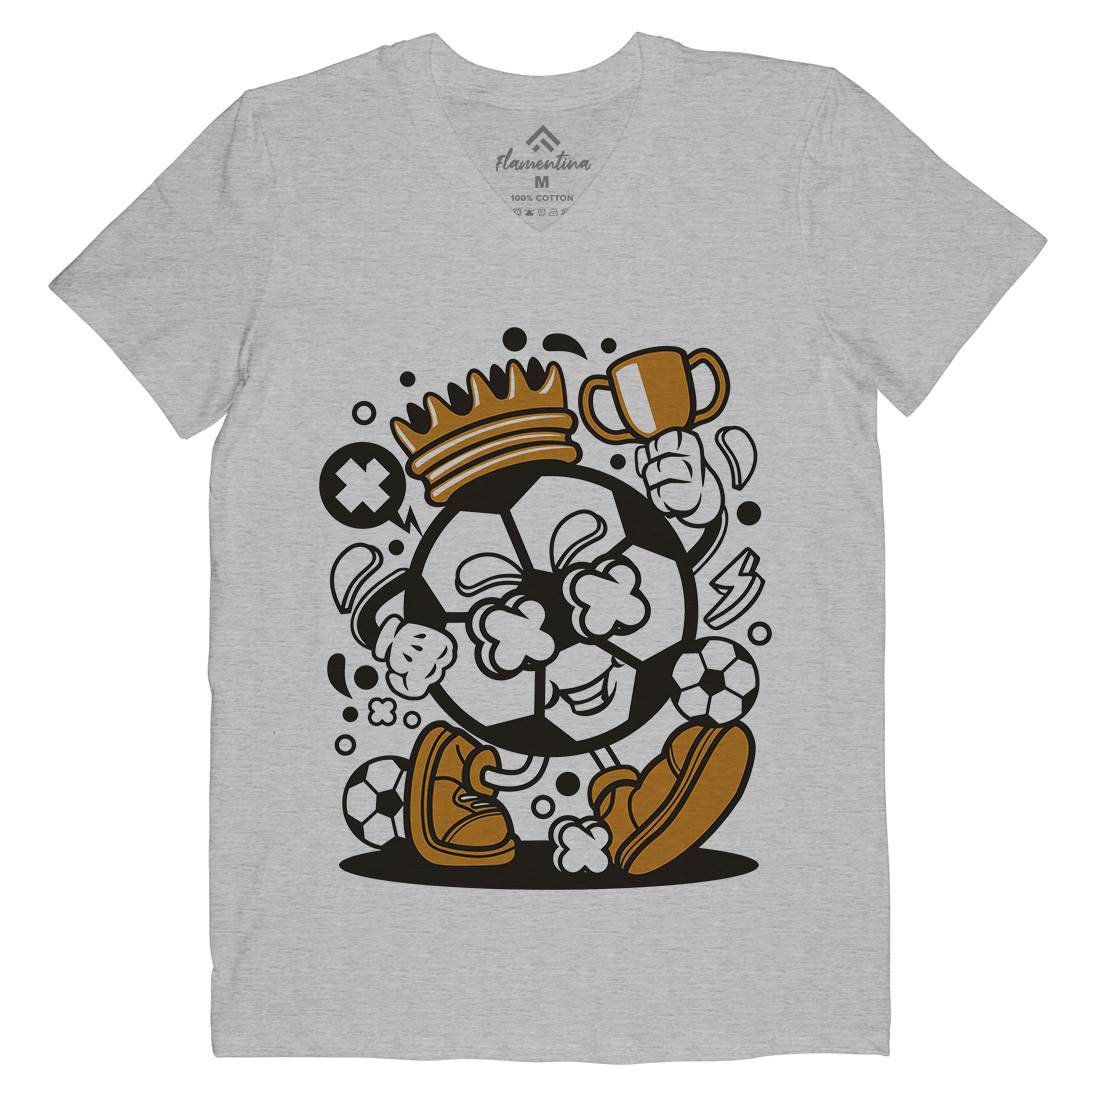 Soccer King Mens Organic V-Neck T-Shirt Sport C251